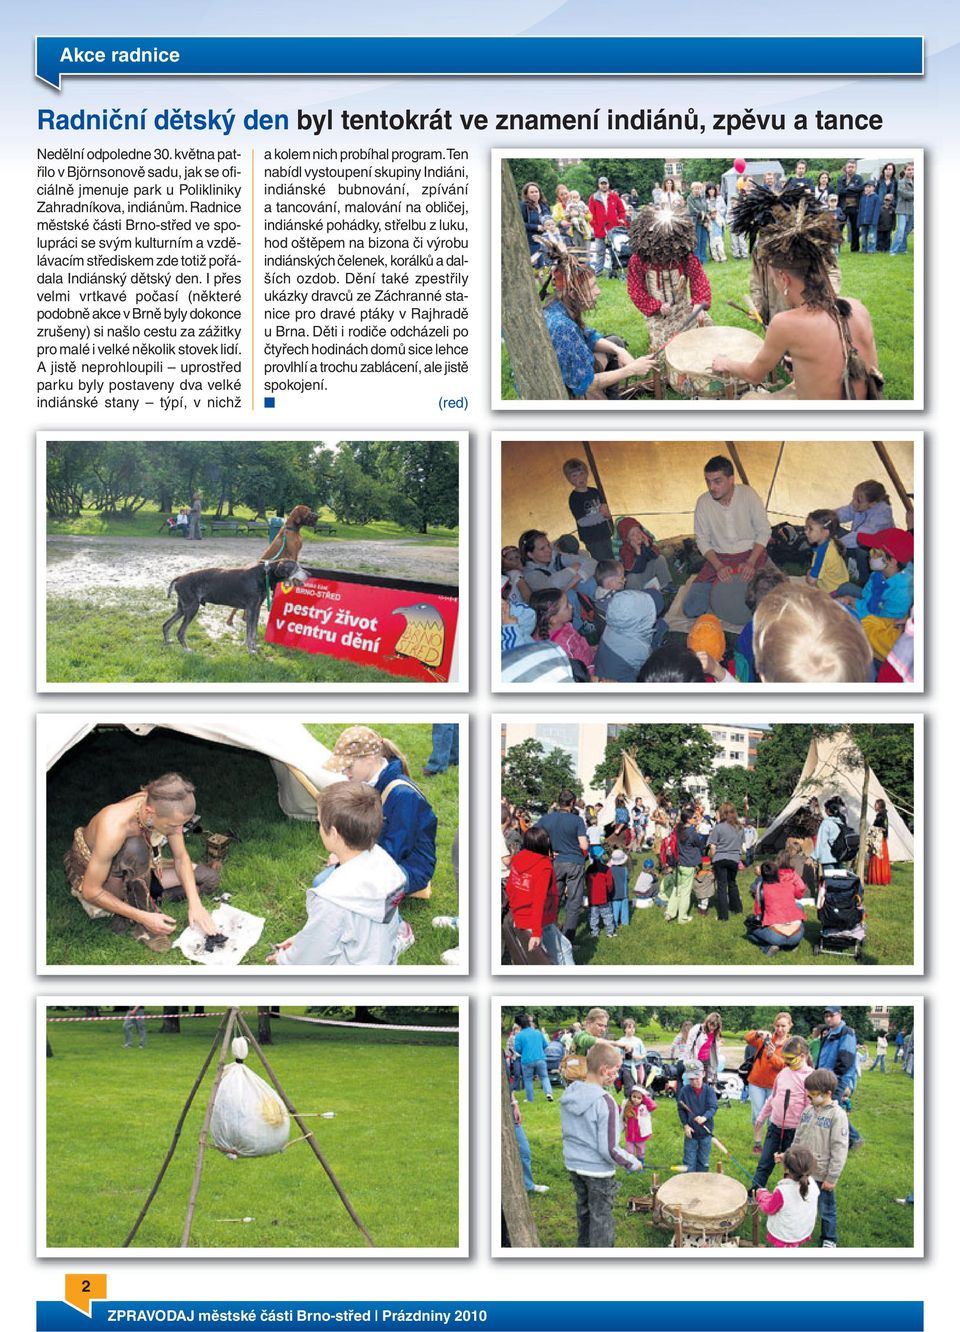 Radnice městské části Brno-střed ve spolupráci se svým kulturním a vzdělávacím střediskem zde totiž pořádala Indiánský dětský den.